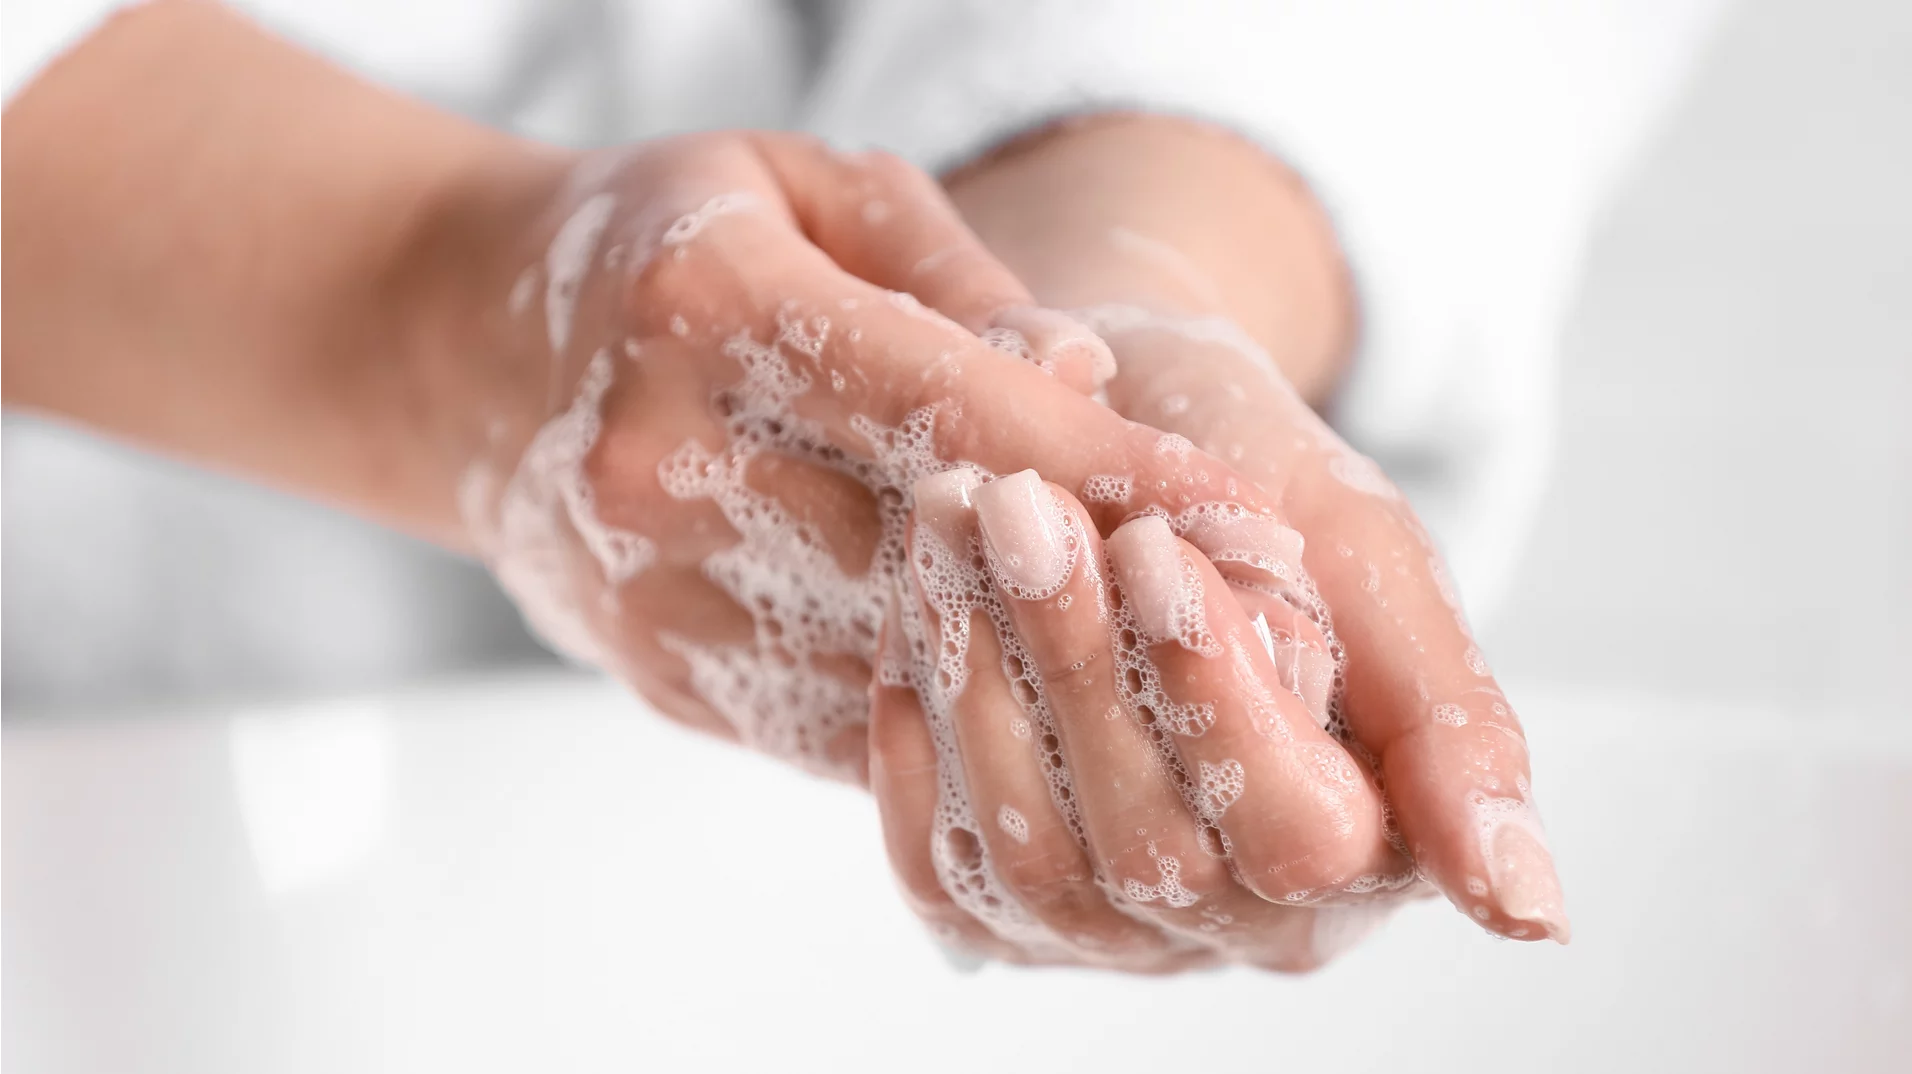 Mögliche Krankheitserreger werden beim Essen oder ähnlichem aufgenommen. Händewaschen kann davor schützen.